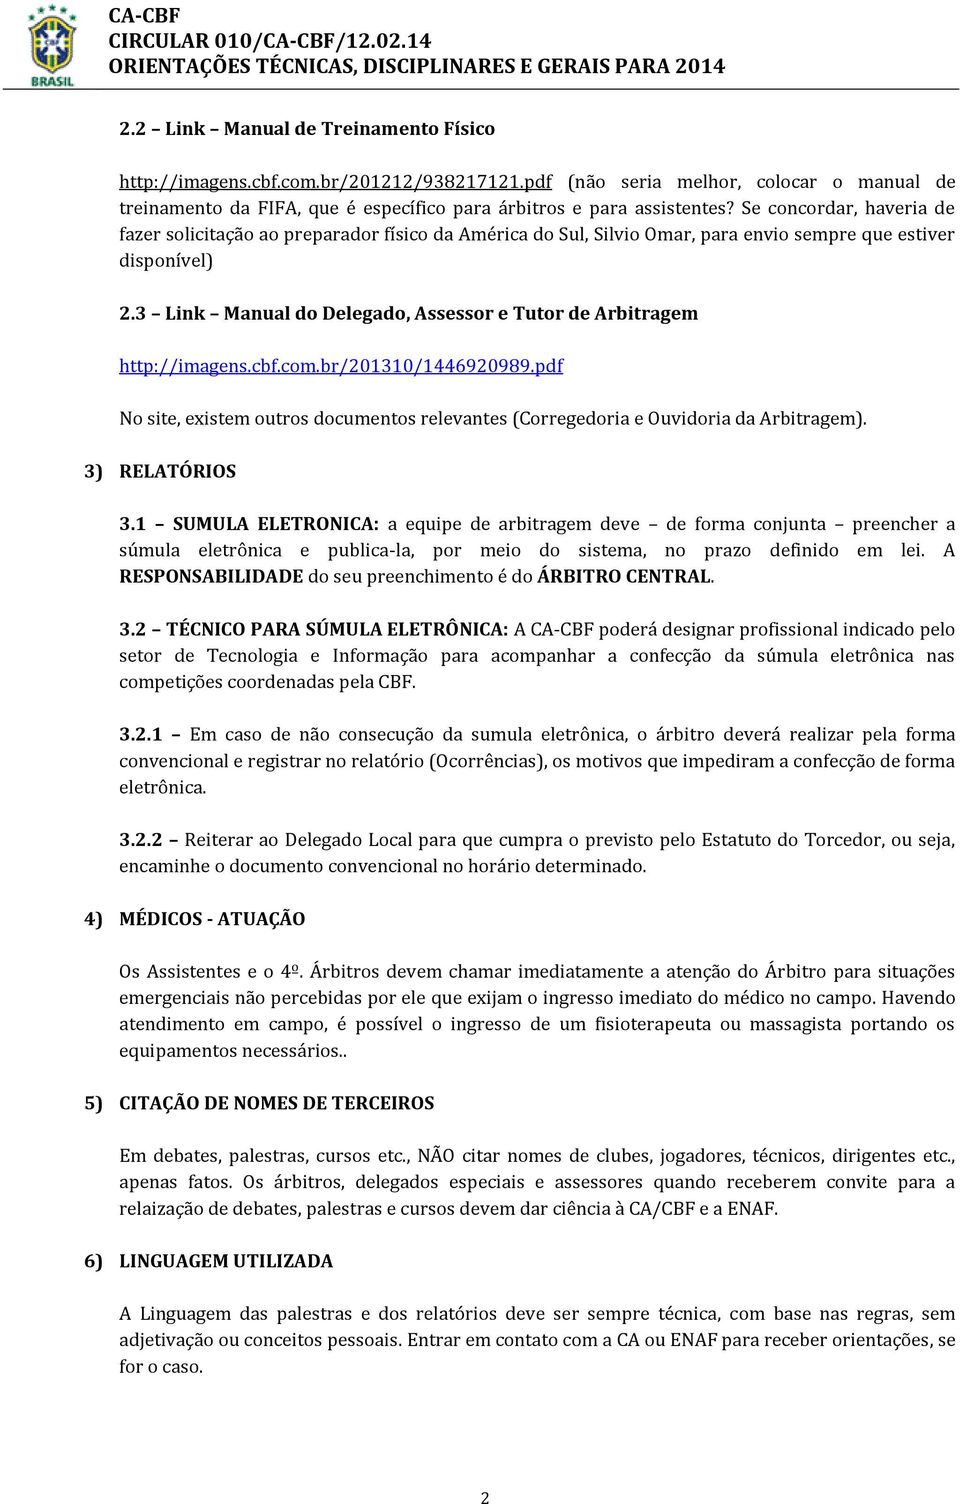 3 Link Manual do Delegado, Assessor e Tutor de Arbitragem http://imagens.cbf.com.br/201310/1446920989.pdf No site, existem outros documentos relevantes (Corregedoria e Ouvidoria da Arbitragem).